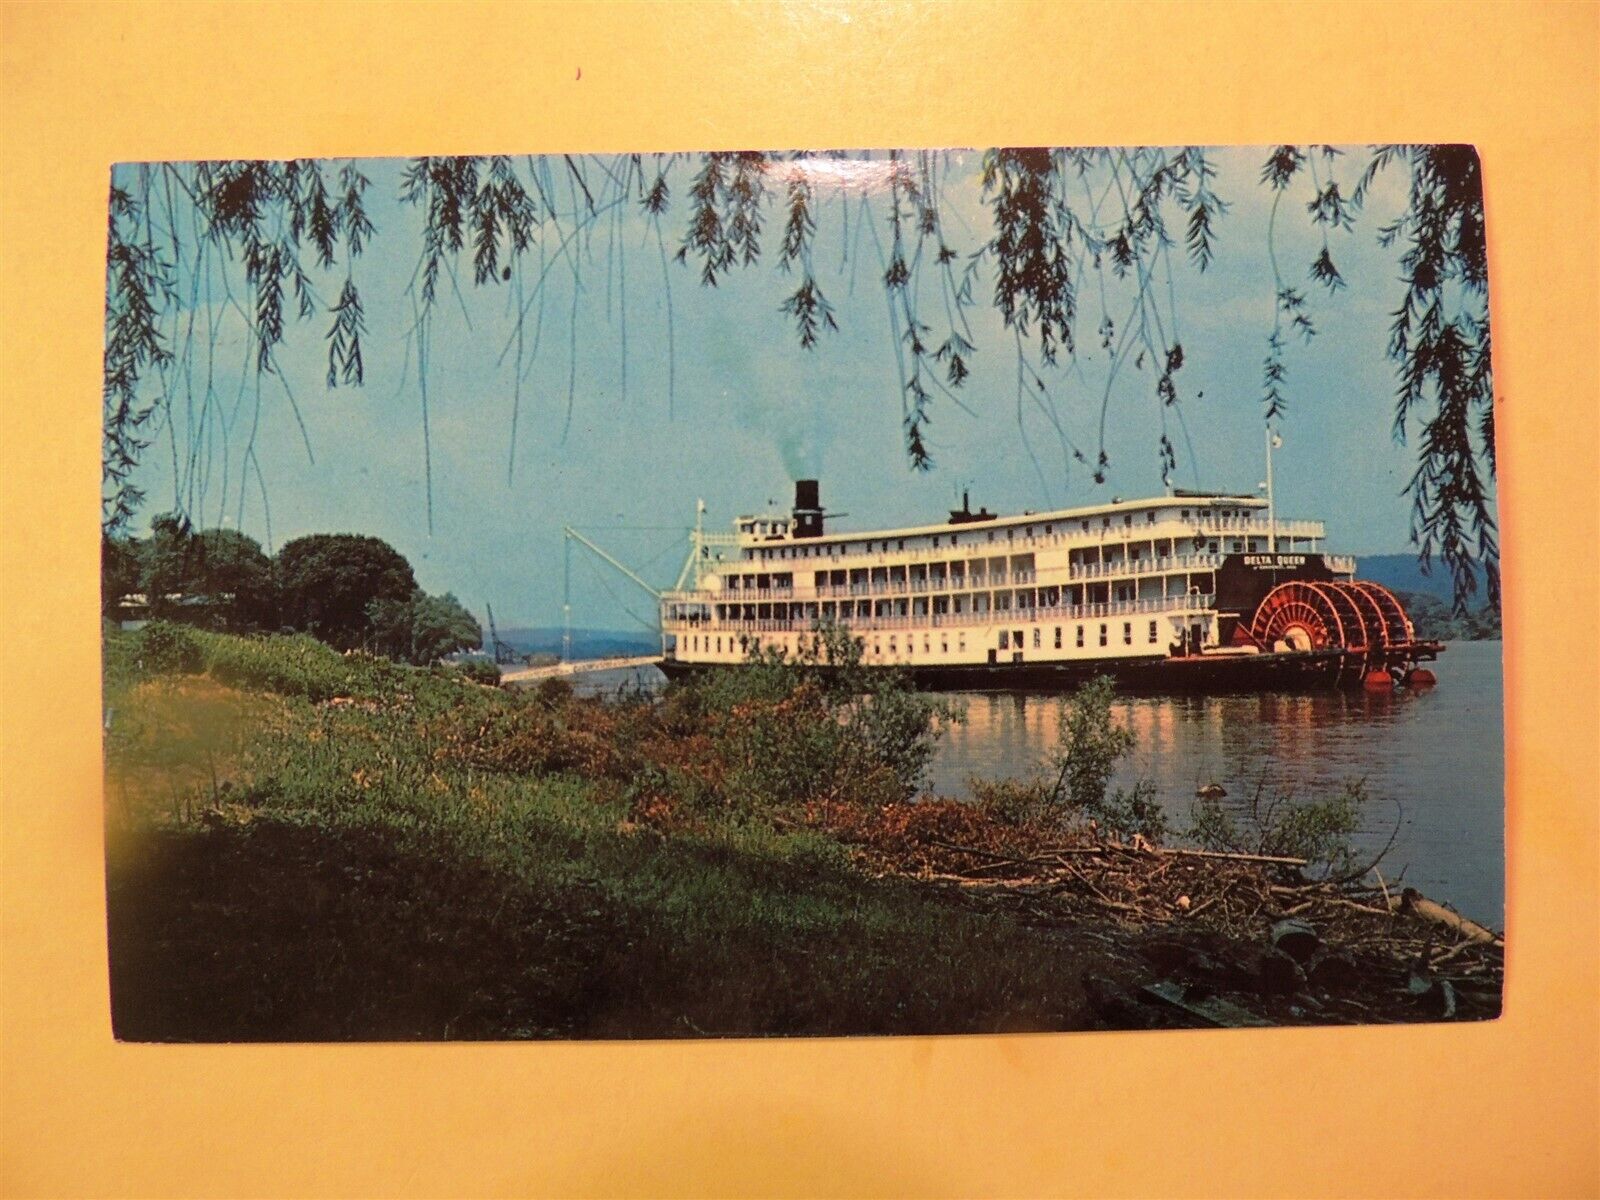 Delta Queen sternwheeler boat Cincinnati Ohio vintage postcard 